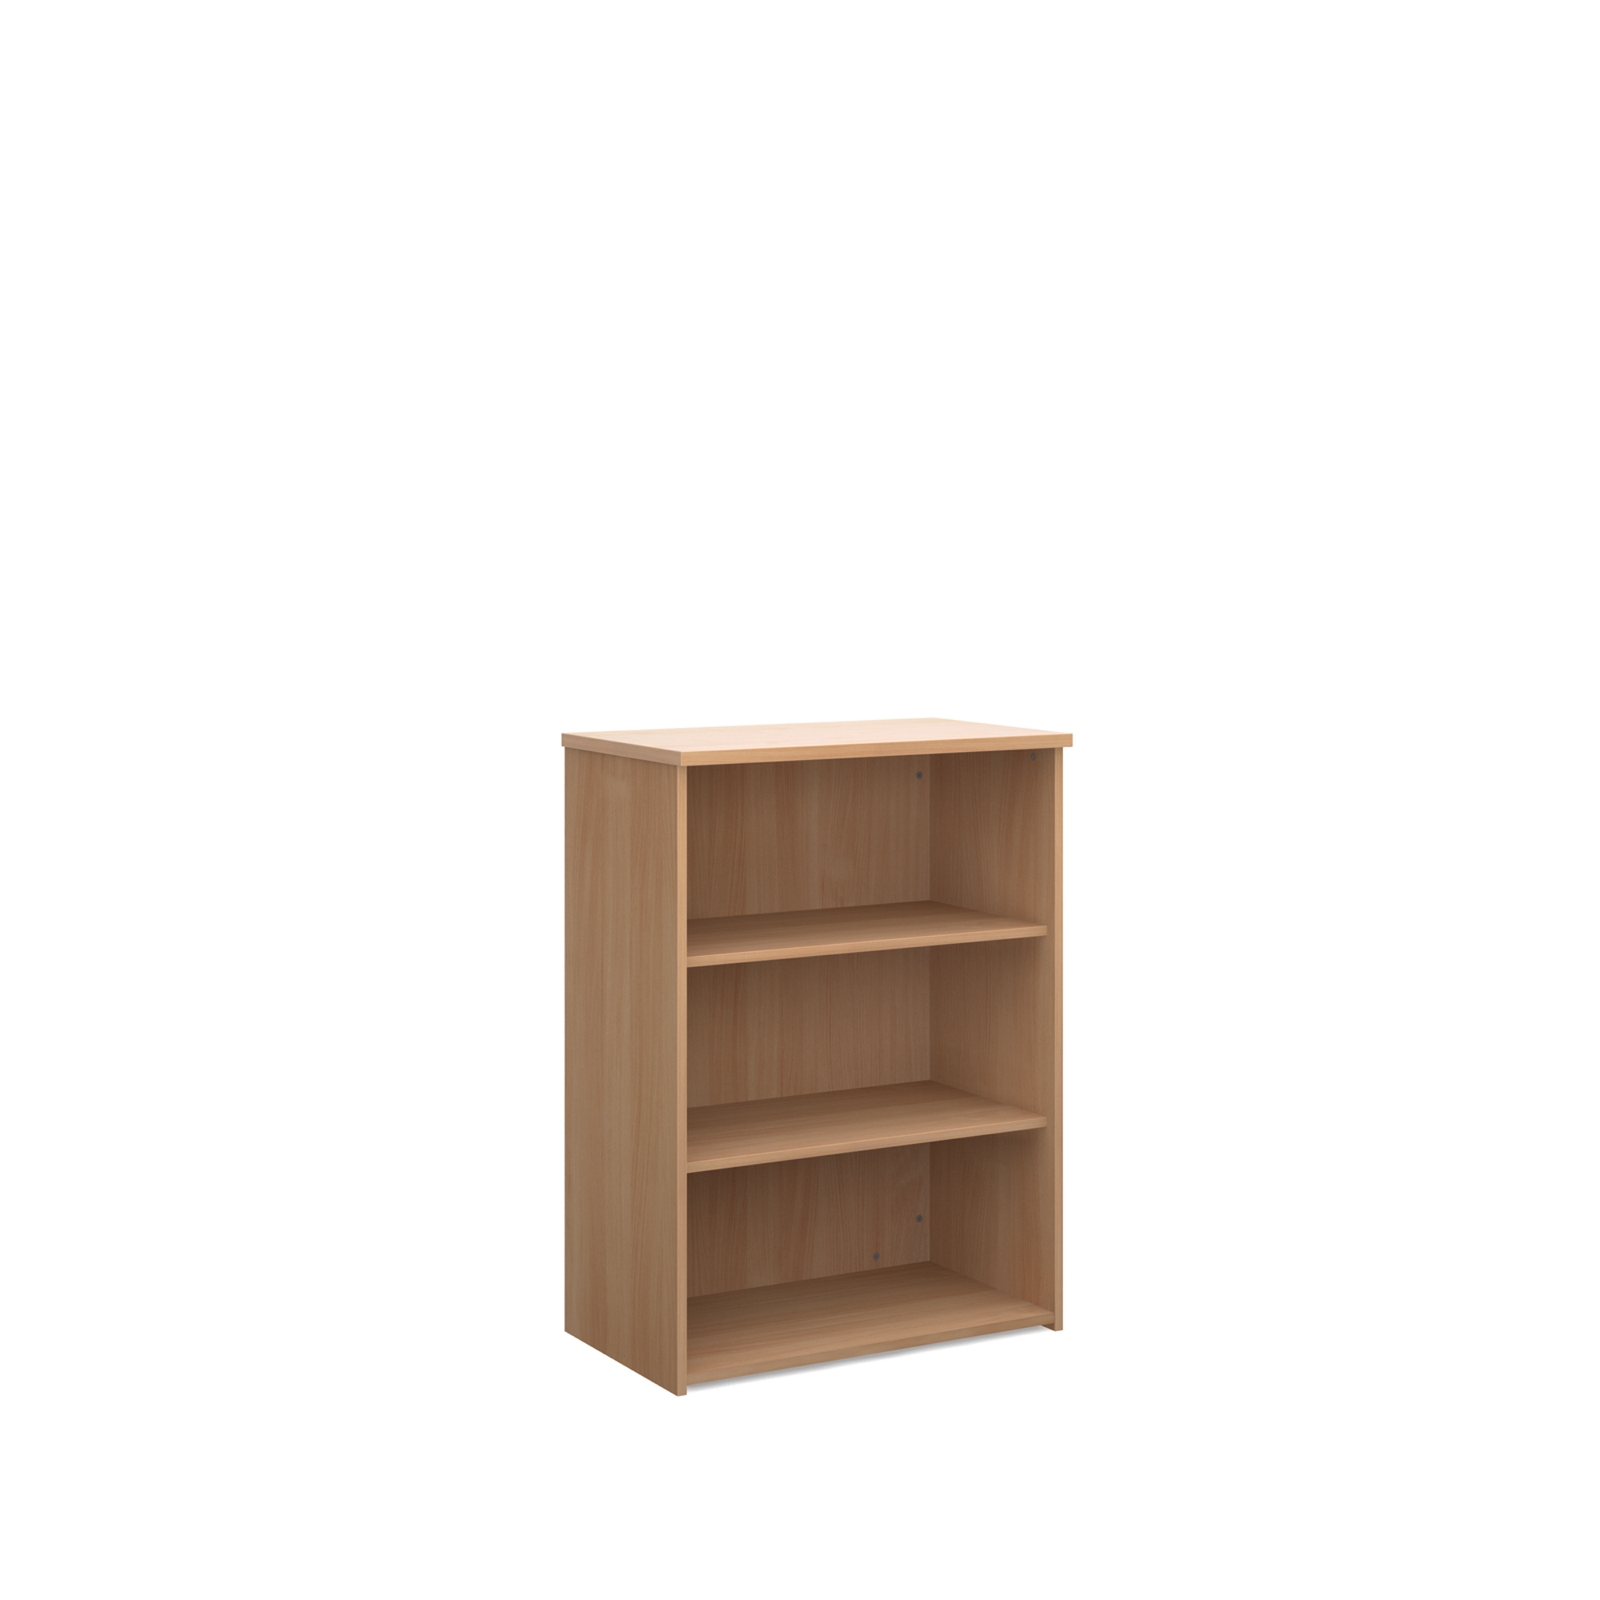 Classmates Wooden Bookcases - Beech - 1000mm - Each